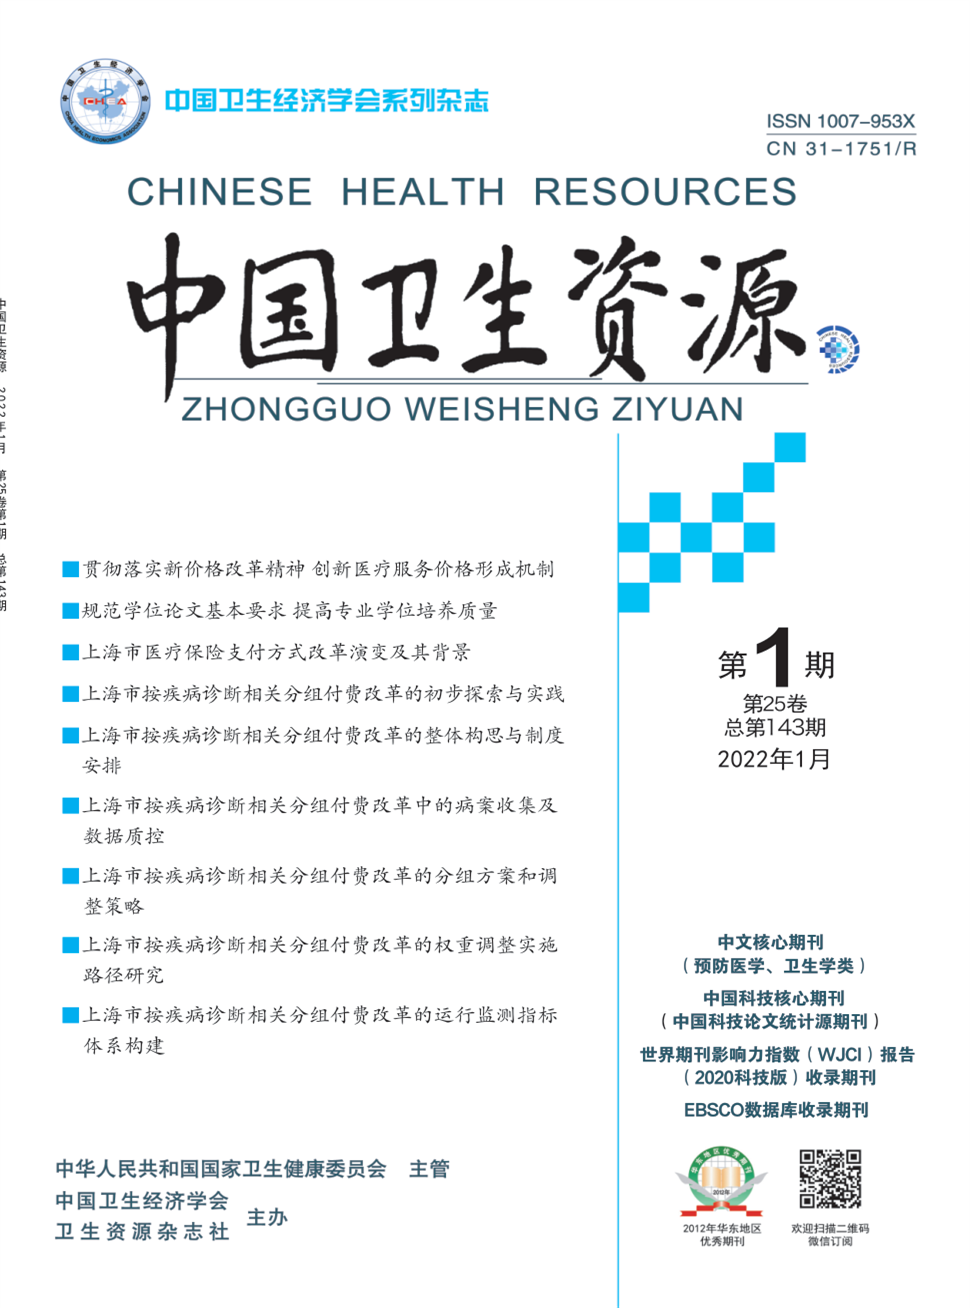 中国卫生资源